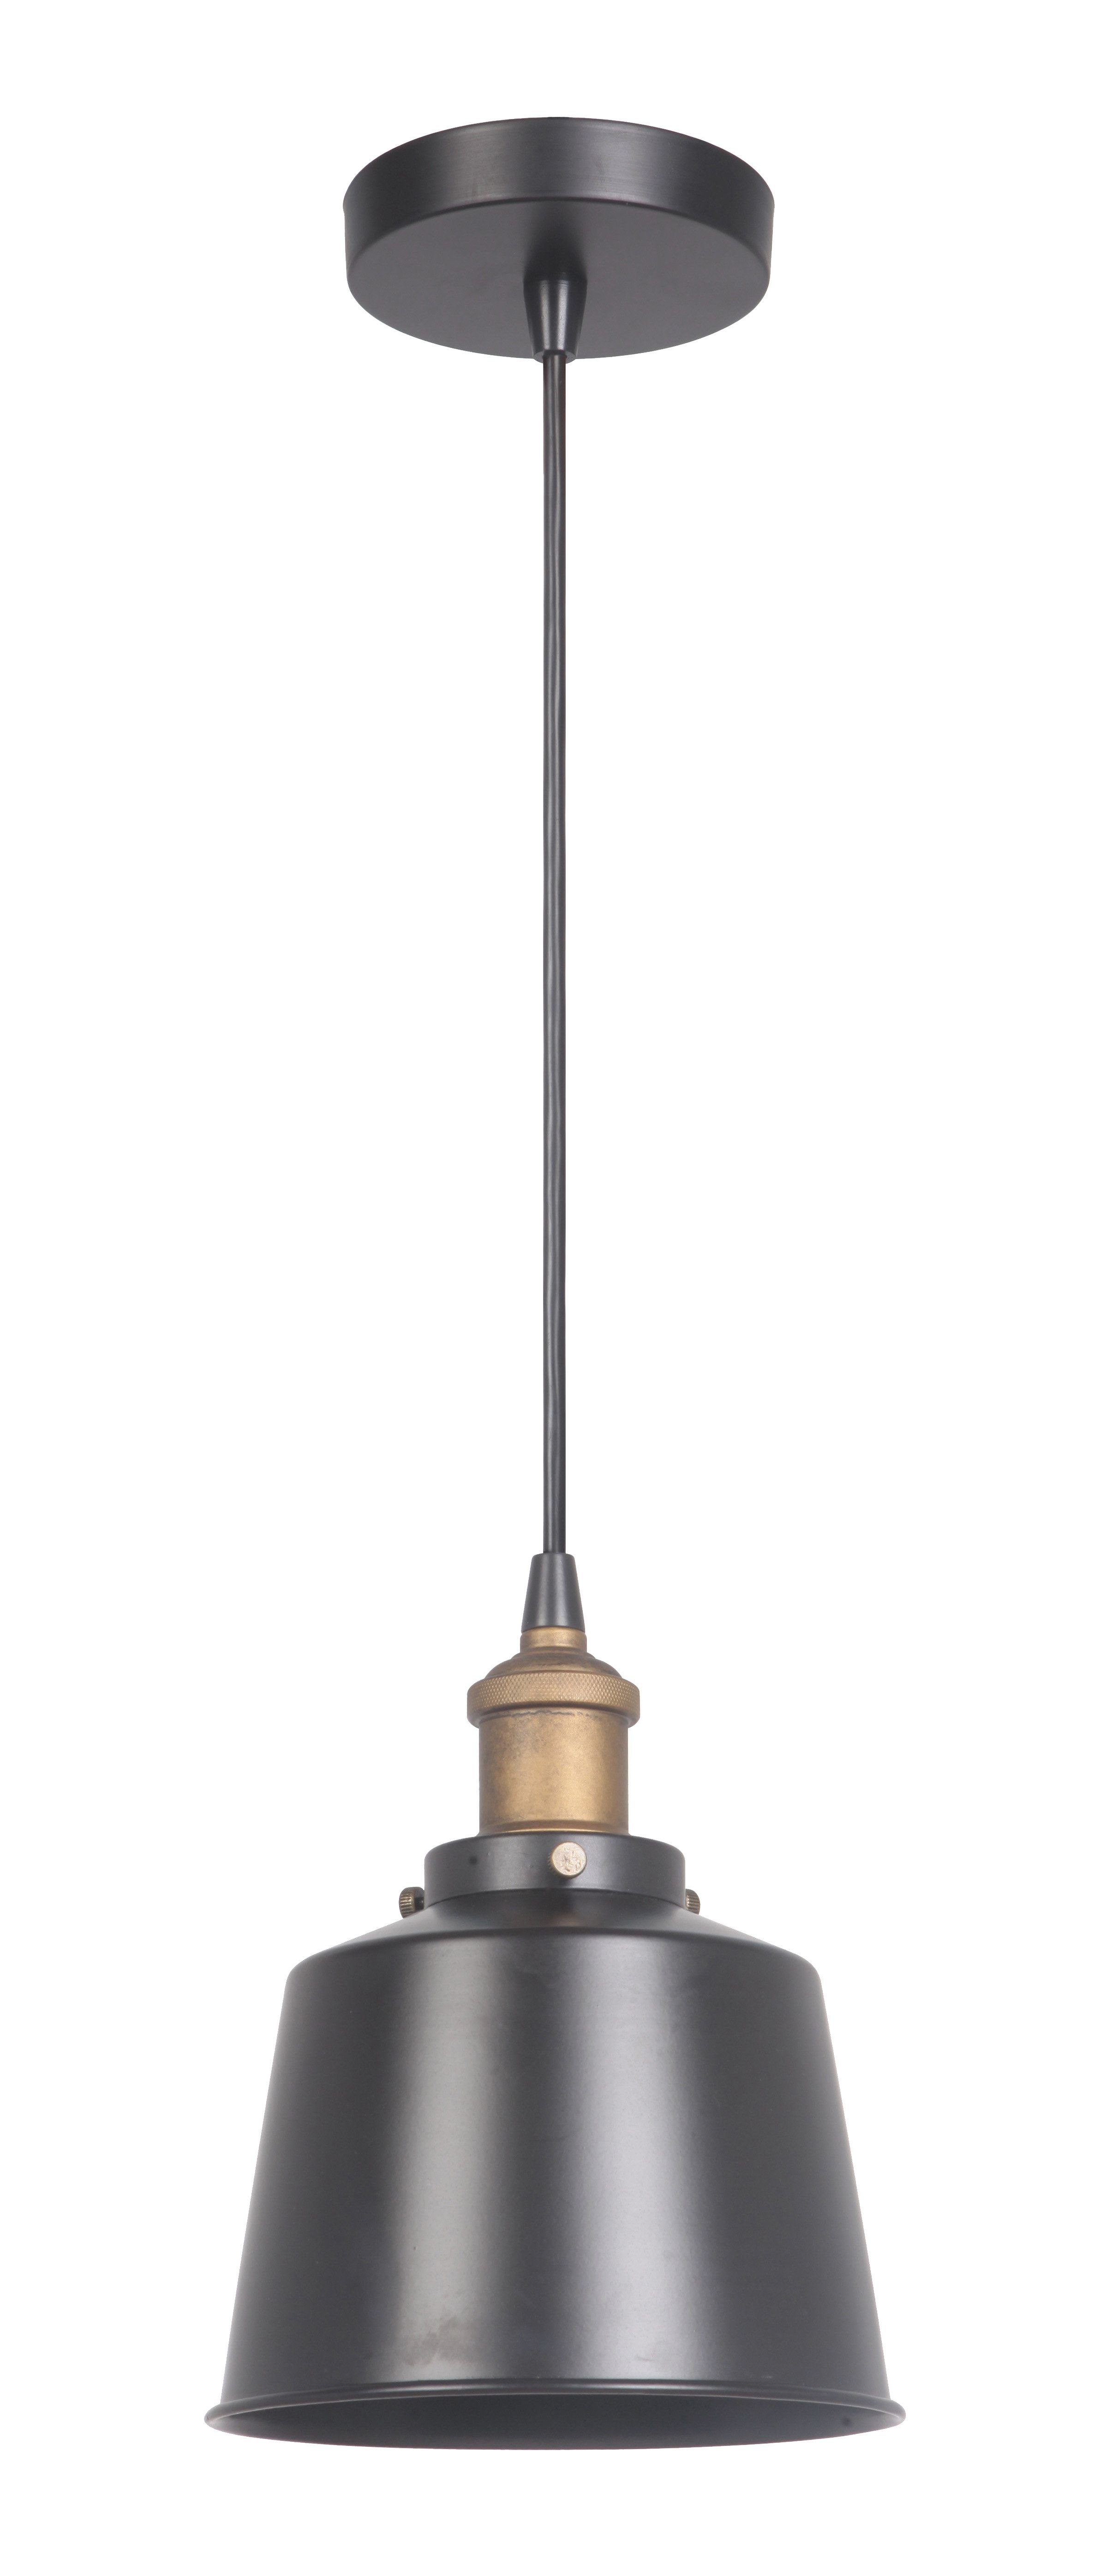 Katmai 1 Light Single Bell Pendant & Reviews | Joss & Main With Regard To Sargent 1 Light Single Bell Pendants (View 14 of 30)